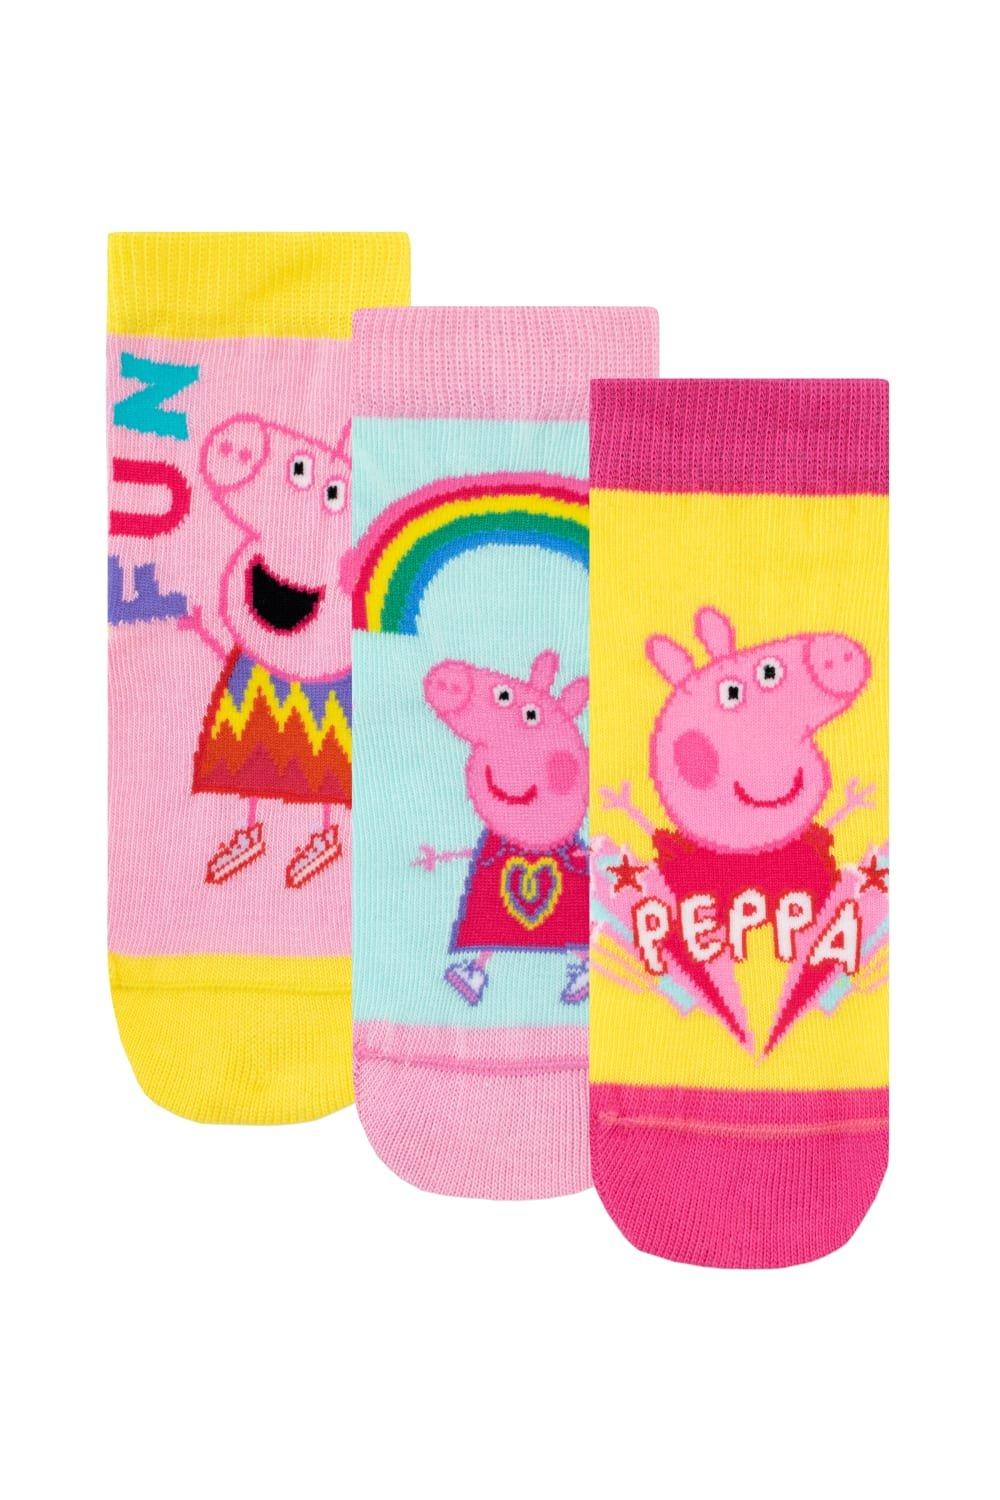 Набор носков Rainbow Fun, 3 шт. Peppa Pig, розовый мужская футболка смеющаяся розовая свинка поросенок m красный